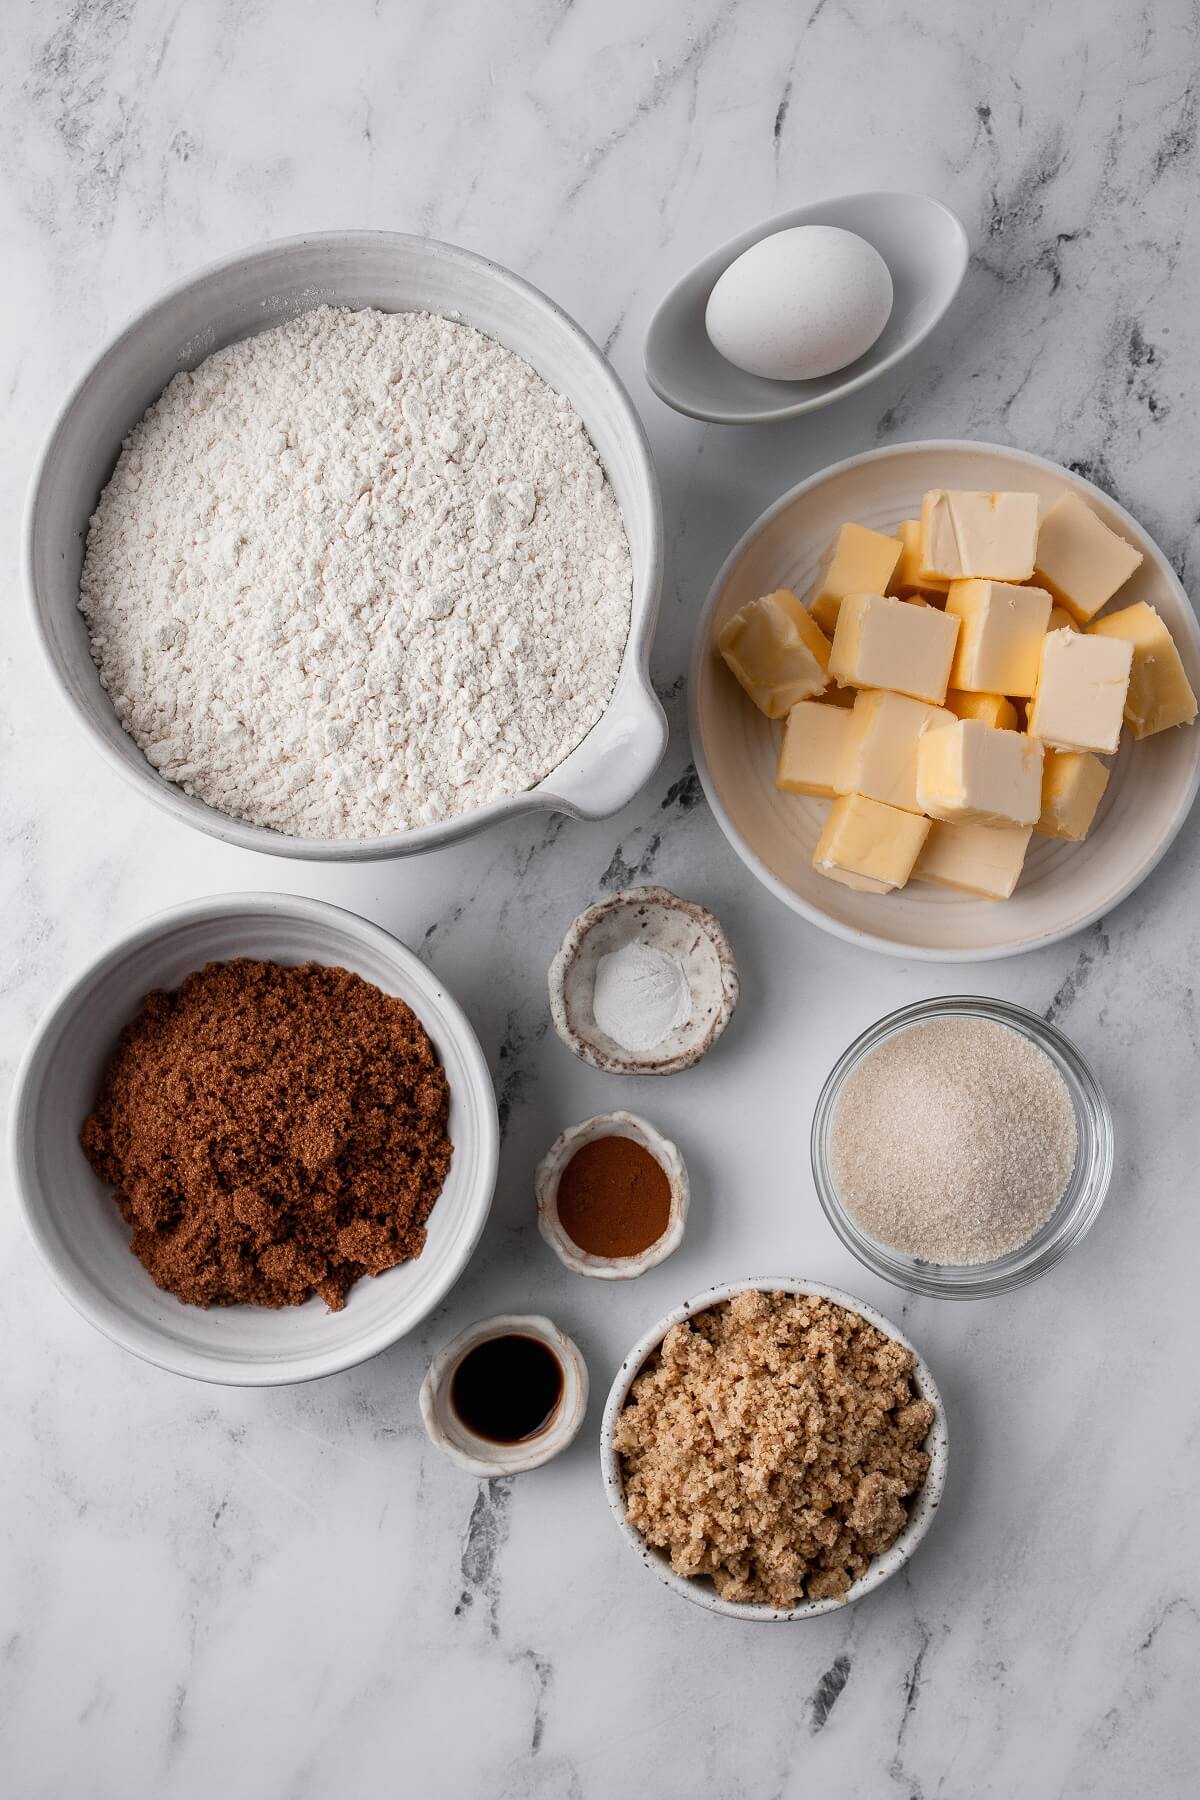 Ingredients used in making Cinnamon Walnut Cookies